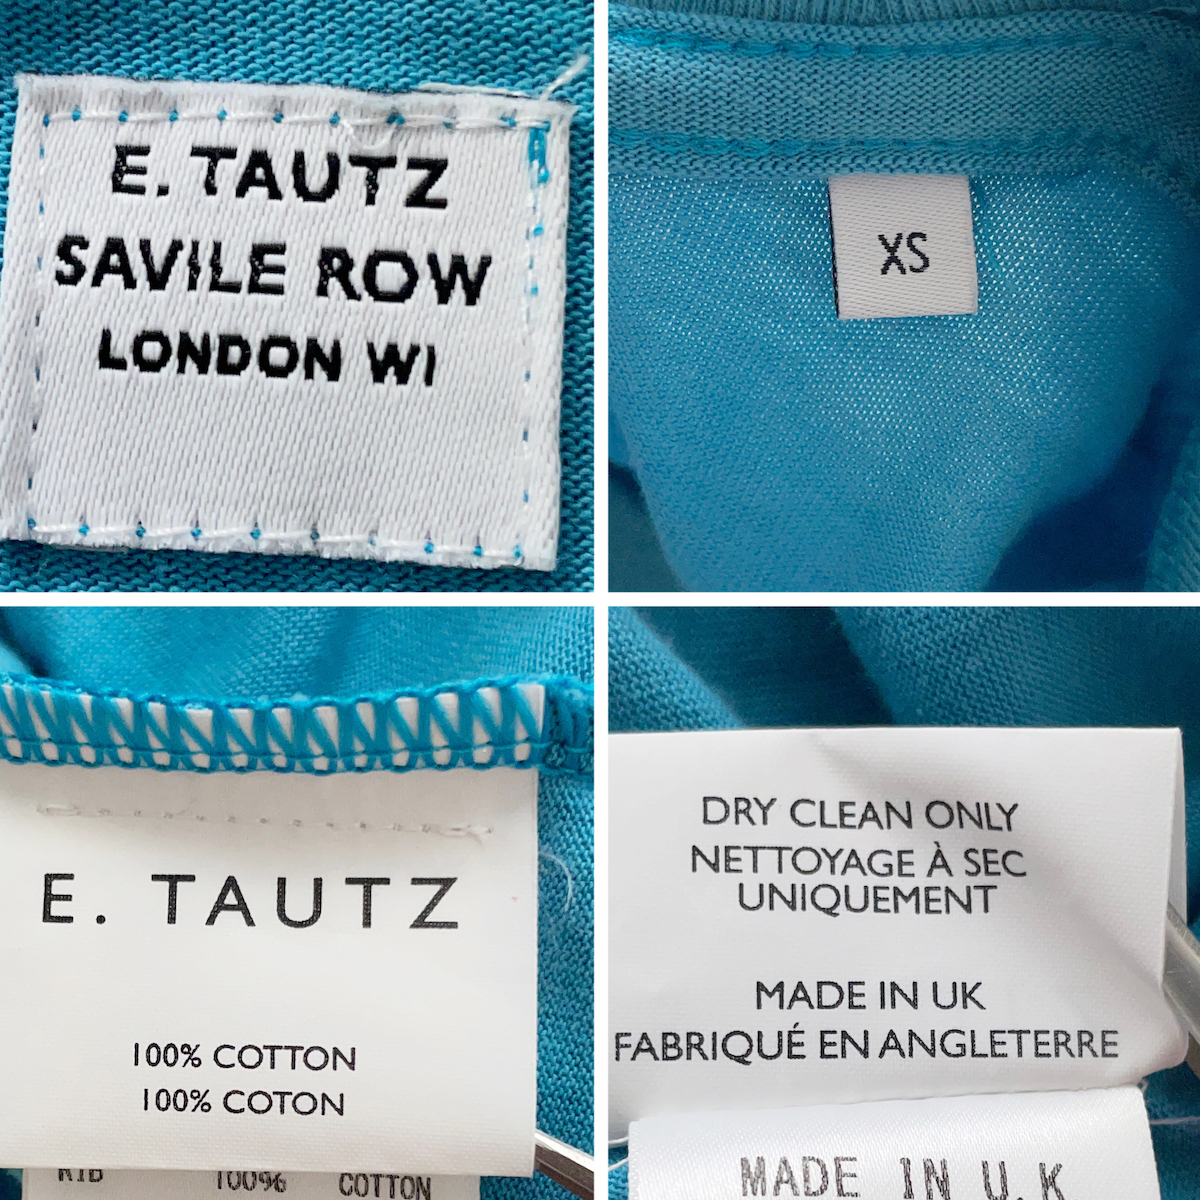 E.TAUTZ イングランド製 ロゴ プリント 半袖 Tシャツ 青 ライト ブルー 水色 フィッシュテール 綿 100% コットン イートウツ XS メンズ M_画像9